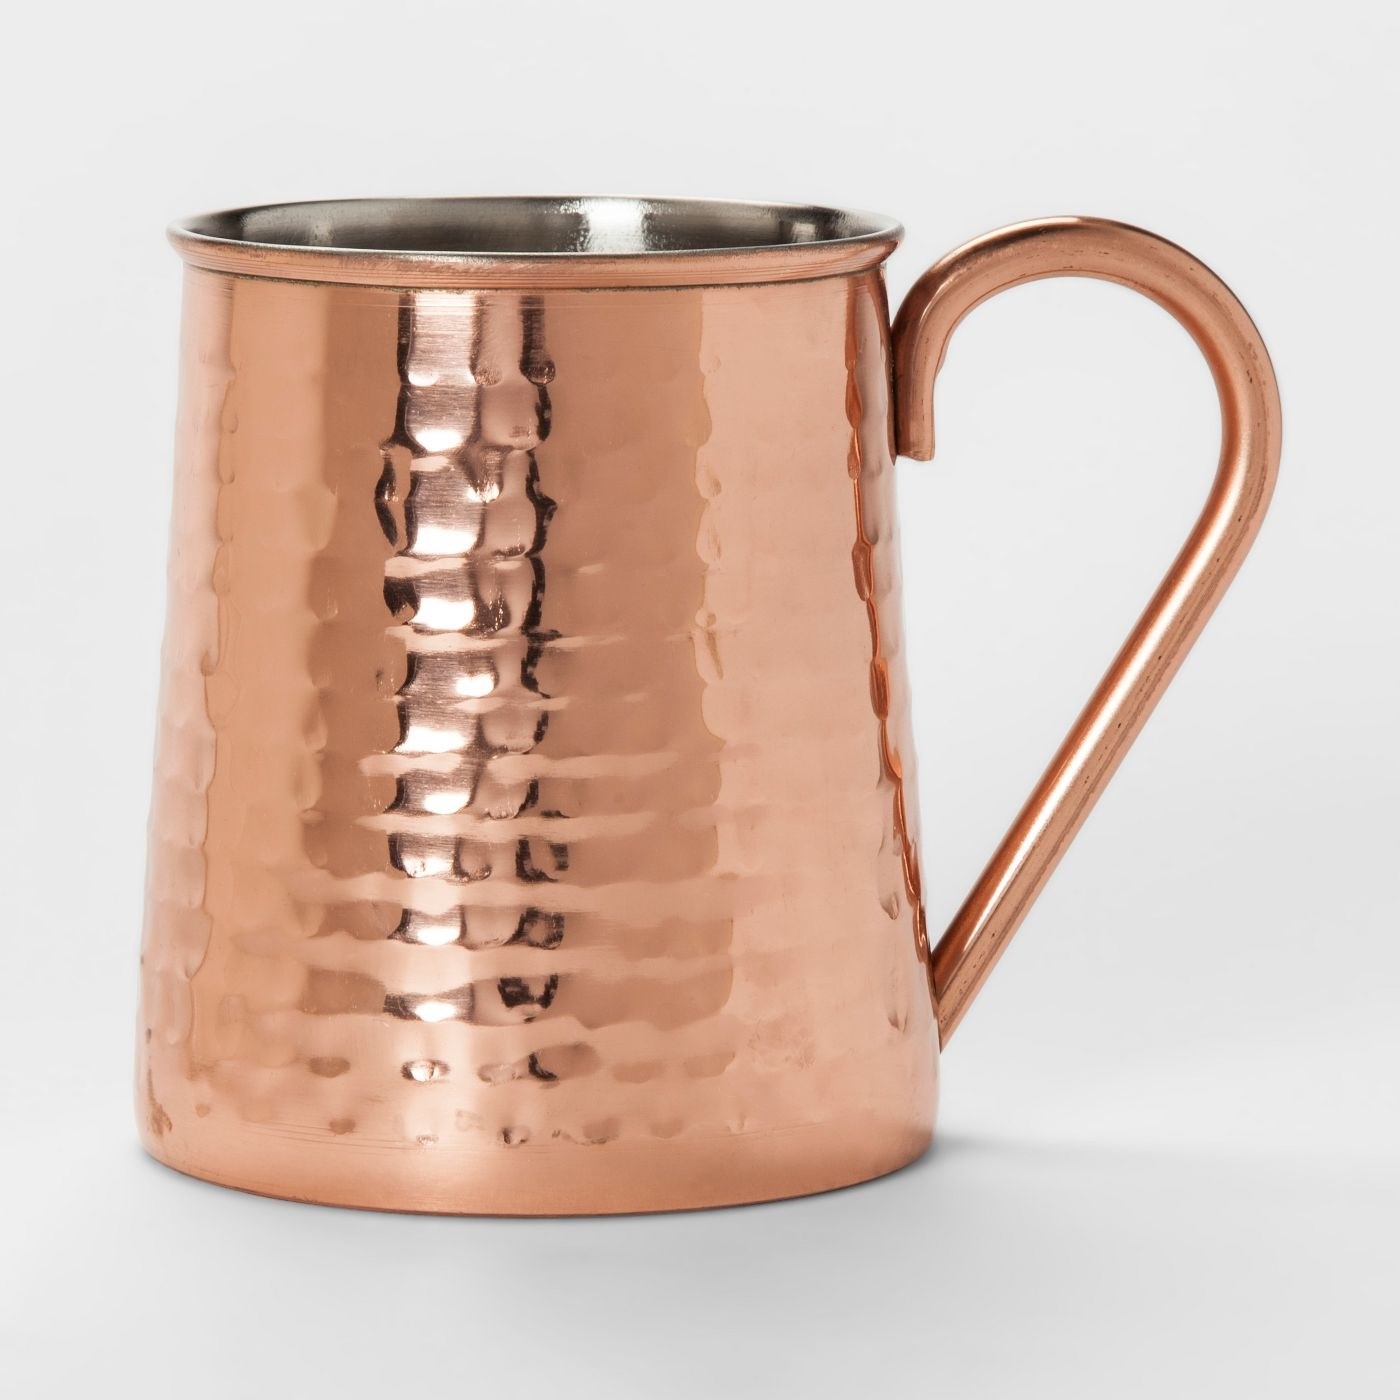 A large copper mug for cocktails